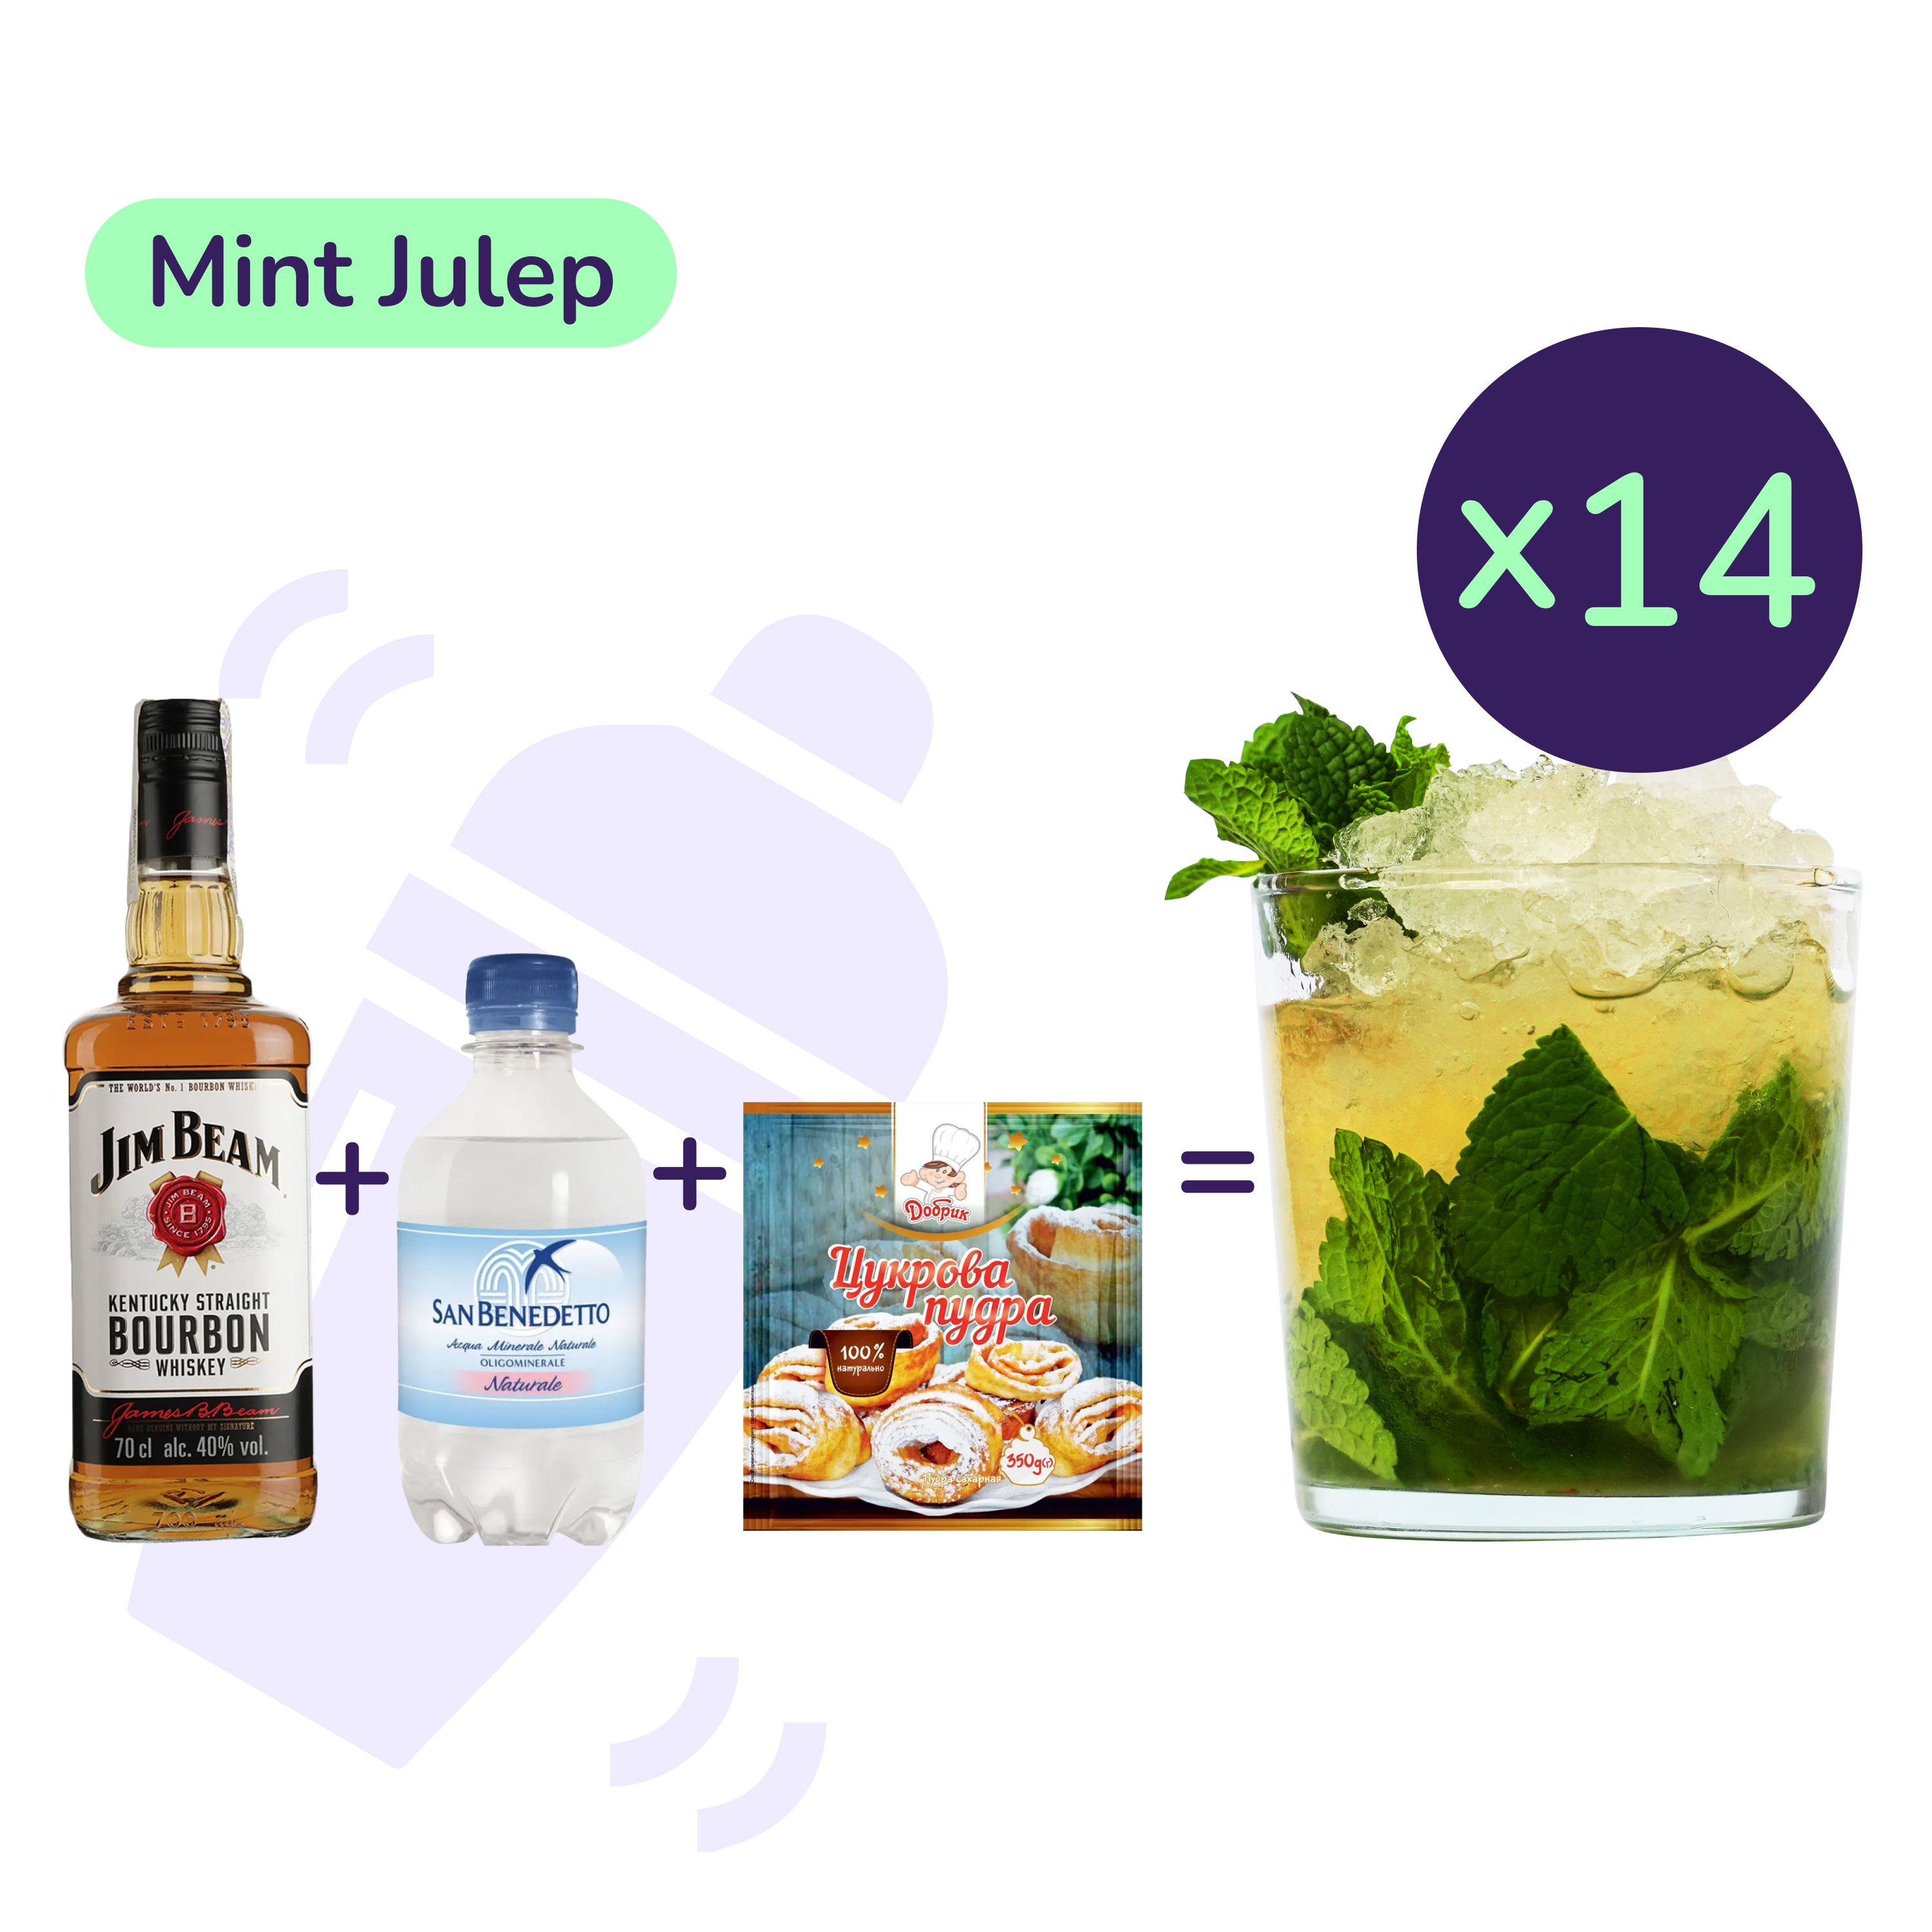 Коктейль Mint Julep (набор ингредиентов) х14 на основе Jim Beam - фото 1